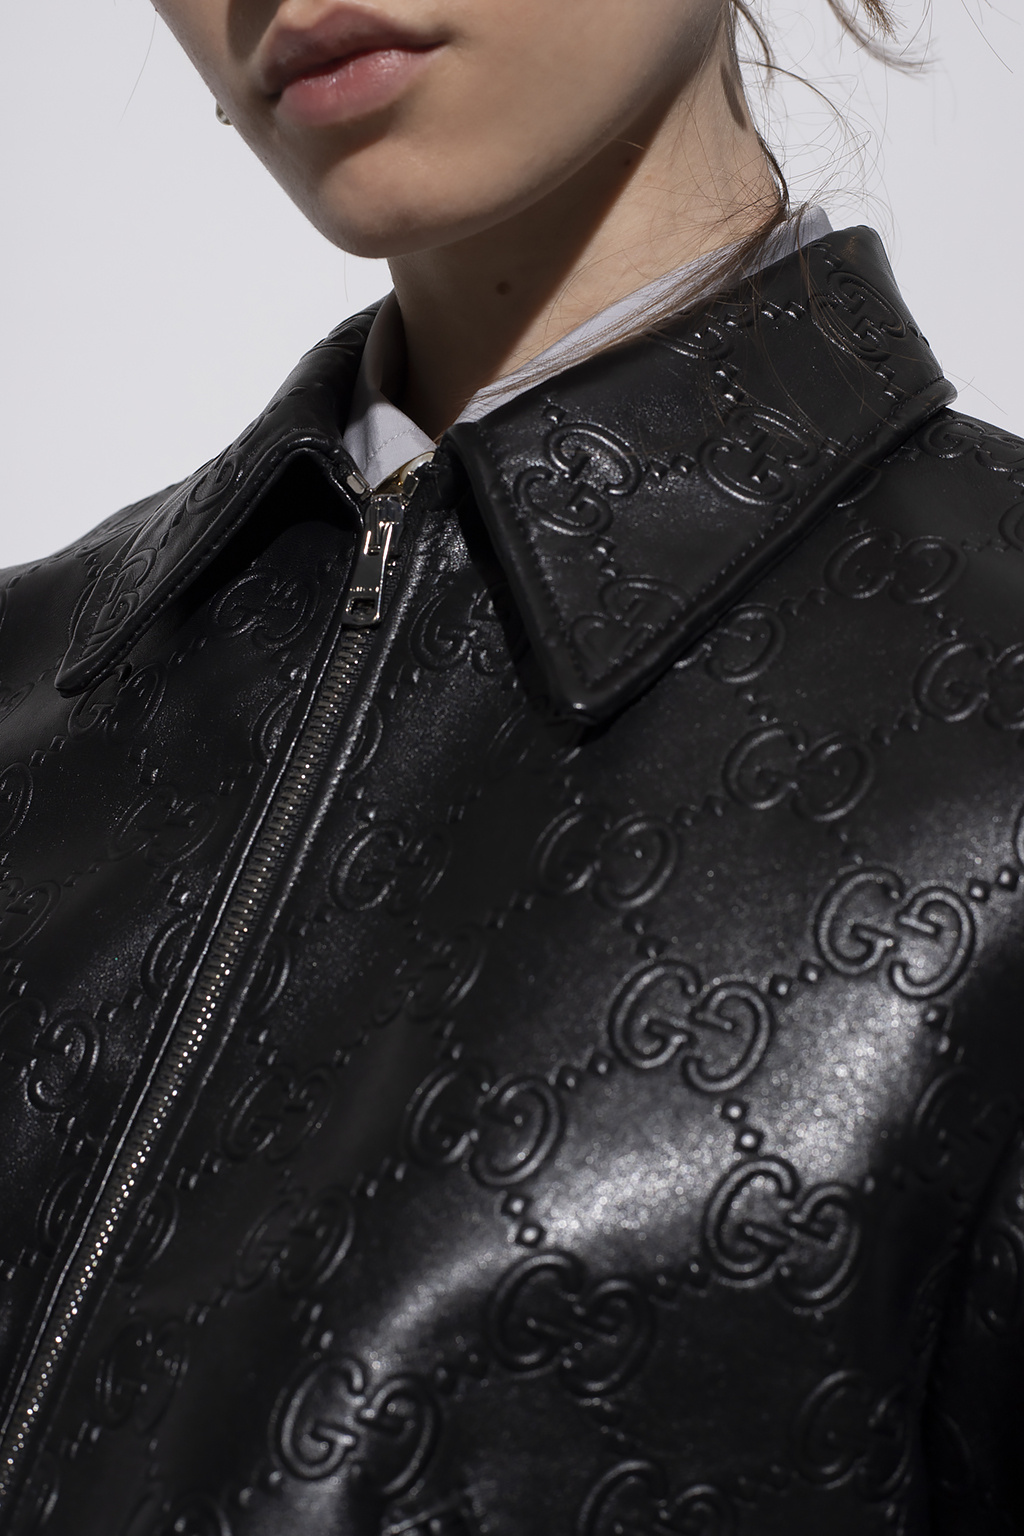 leather jacket monogram